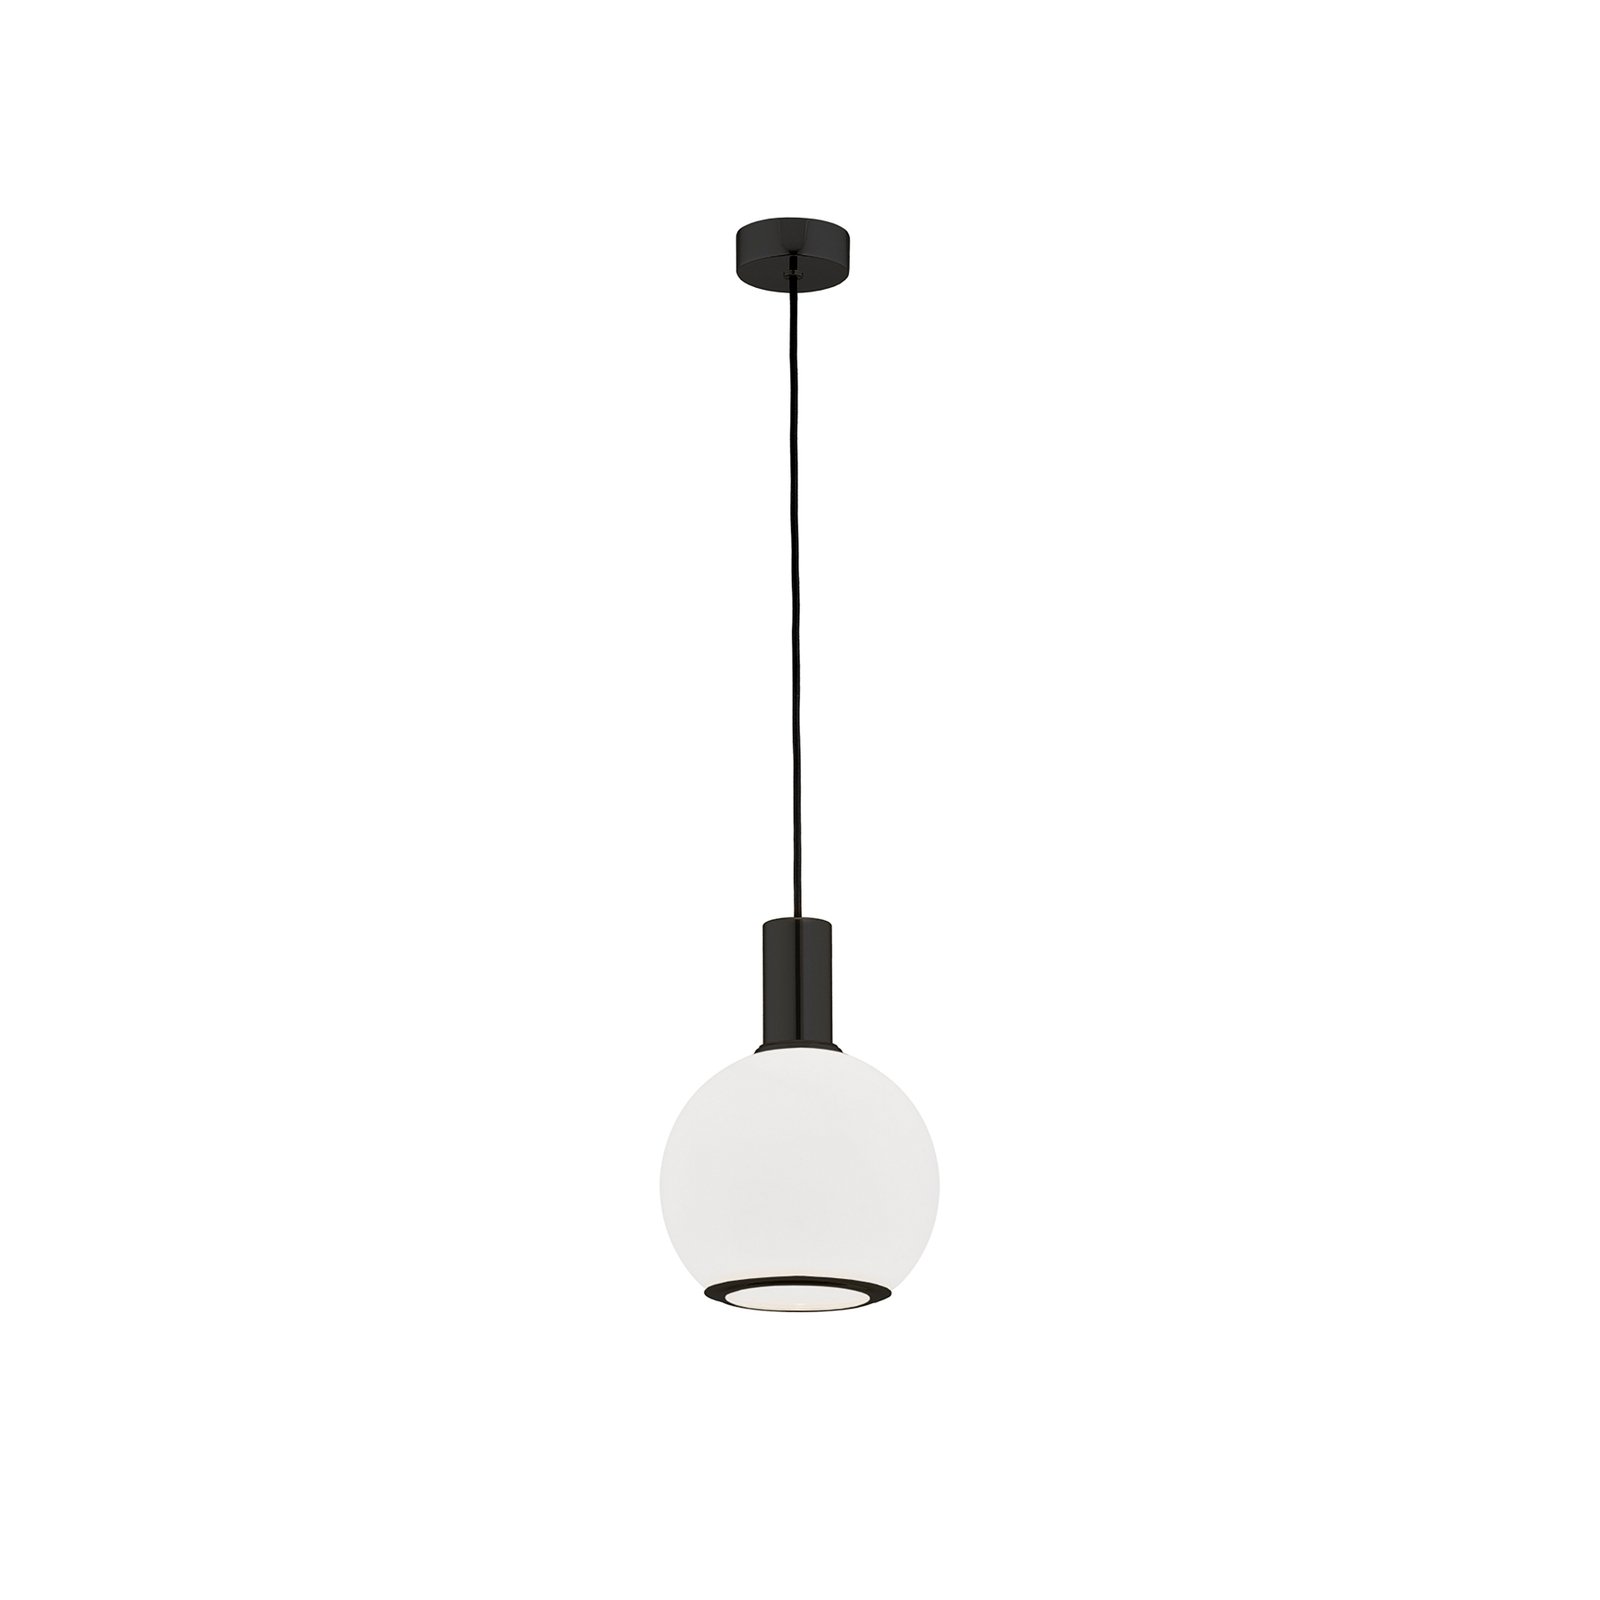 Hanglamp Milano, 1-lamp, bol, wit